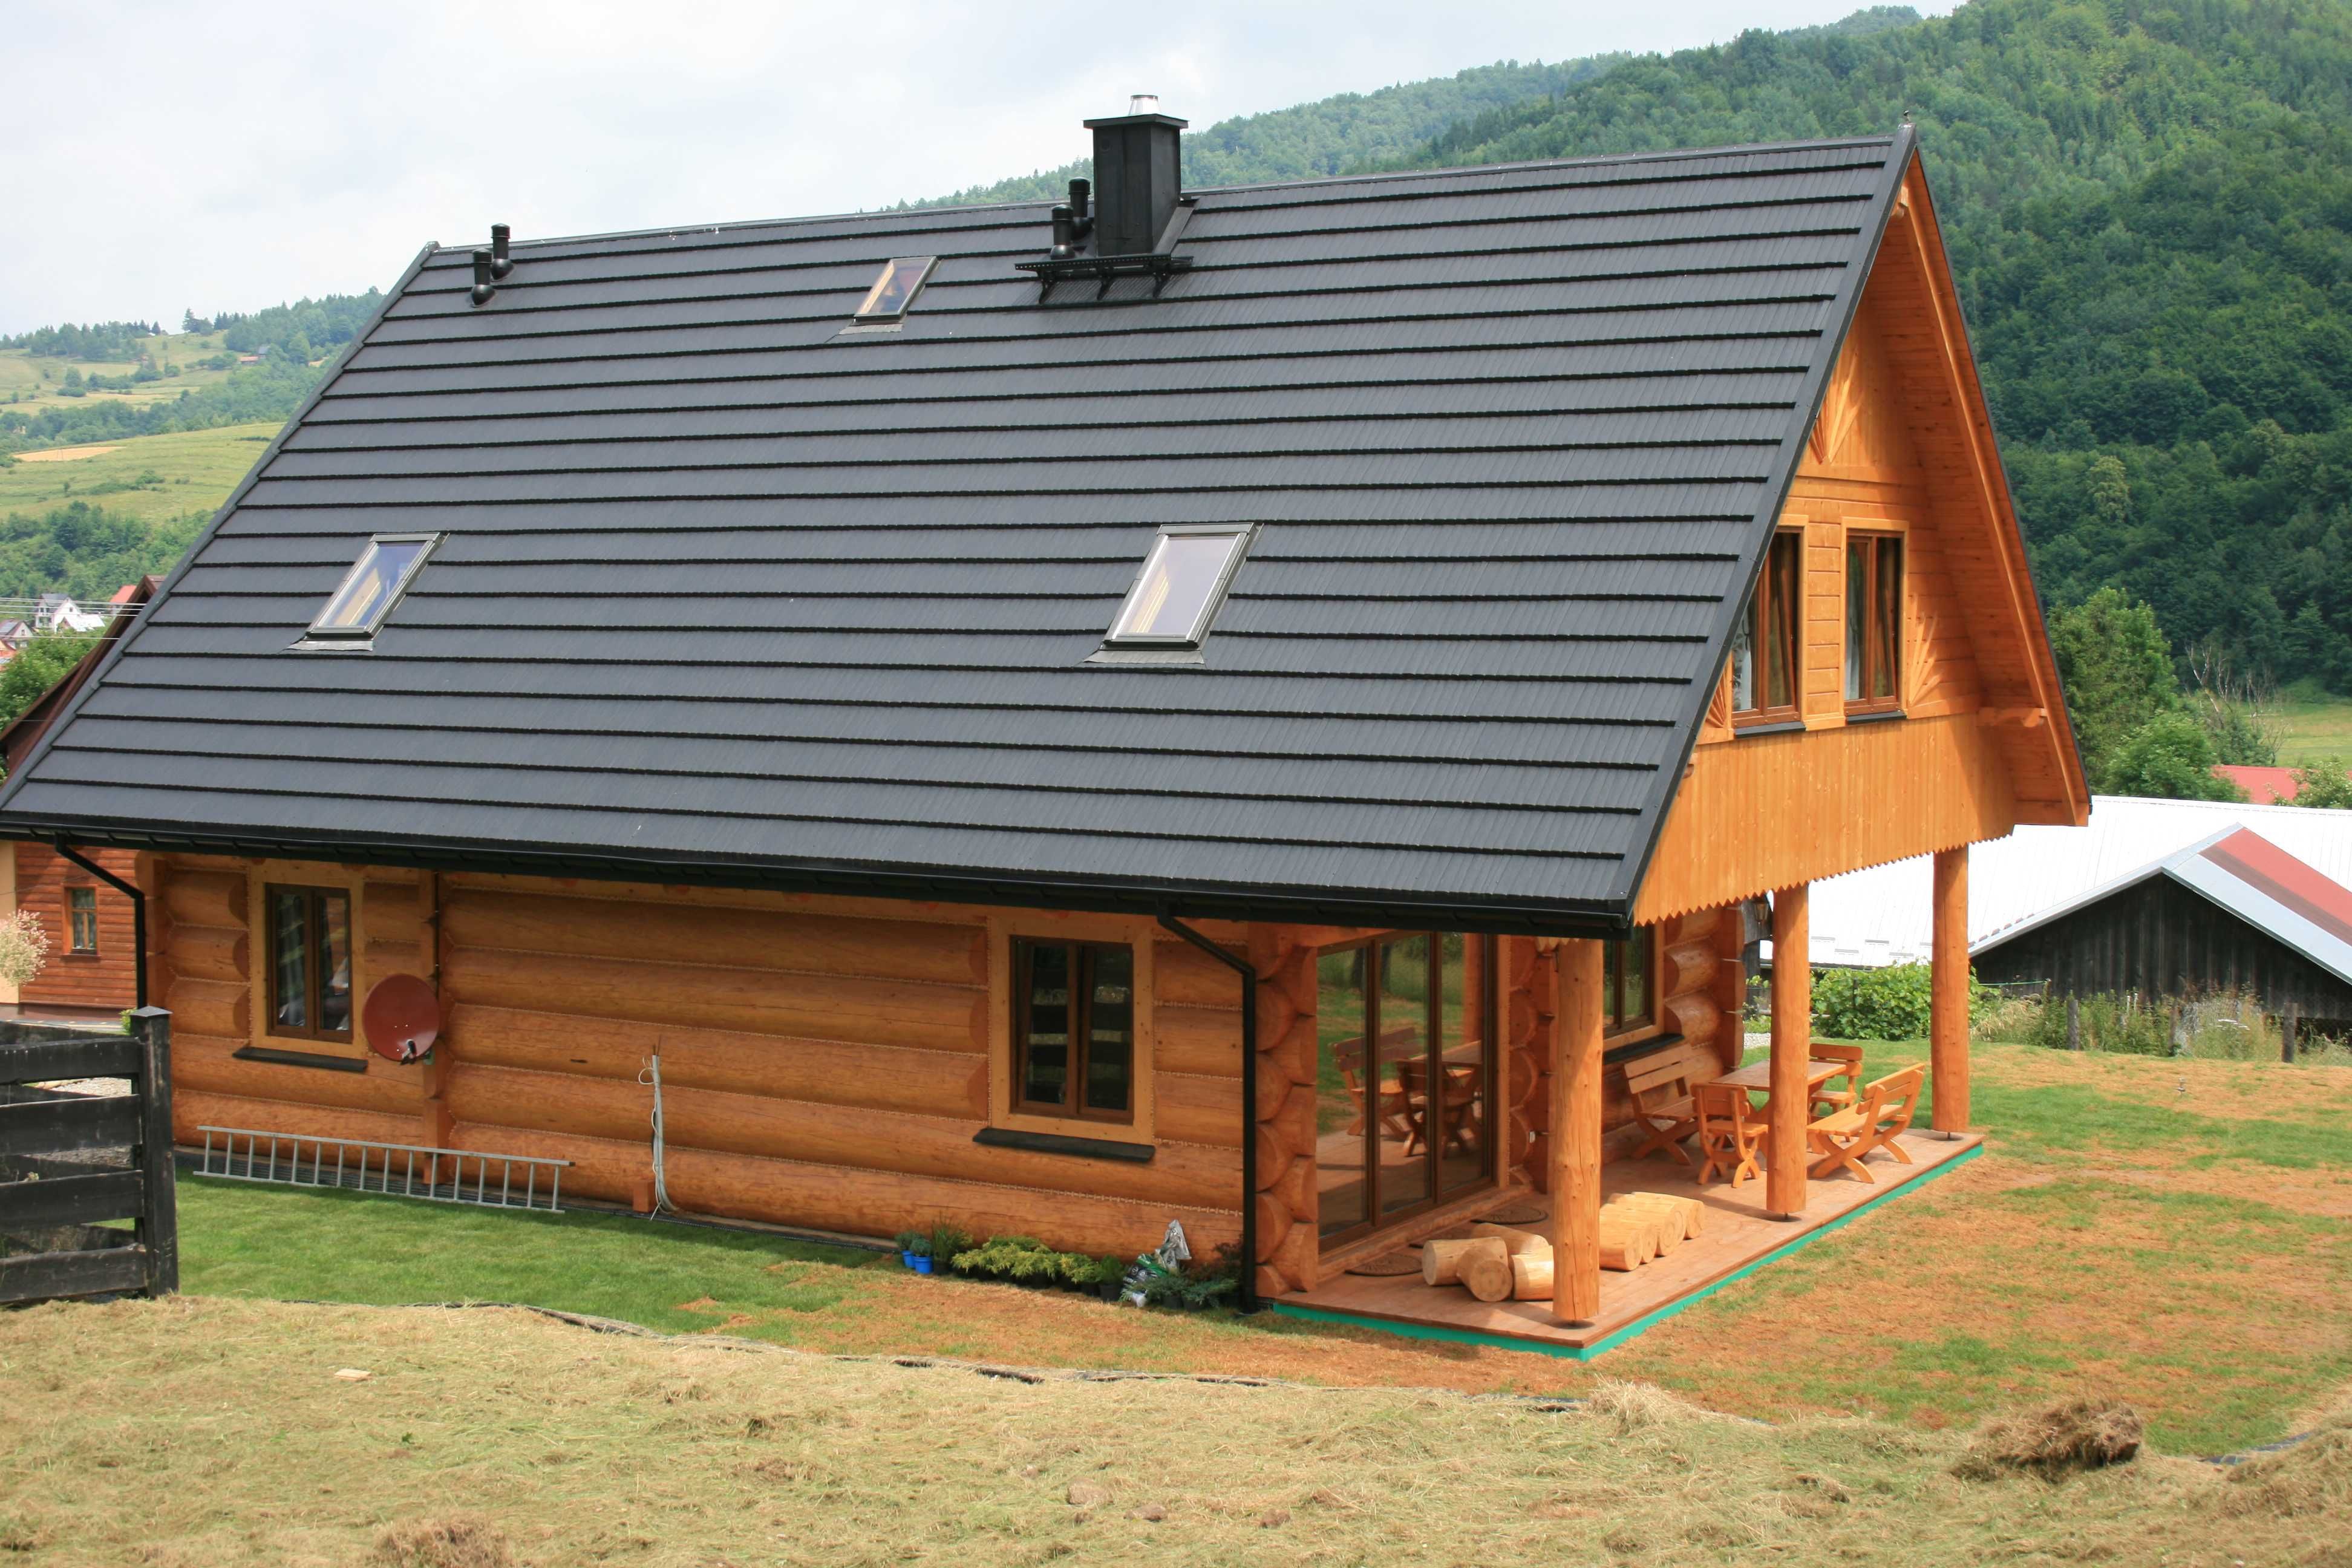 Dom w górach na wynajem Pieniny  Gorce  Szczawnica, 14 osób, sauna